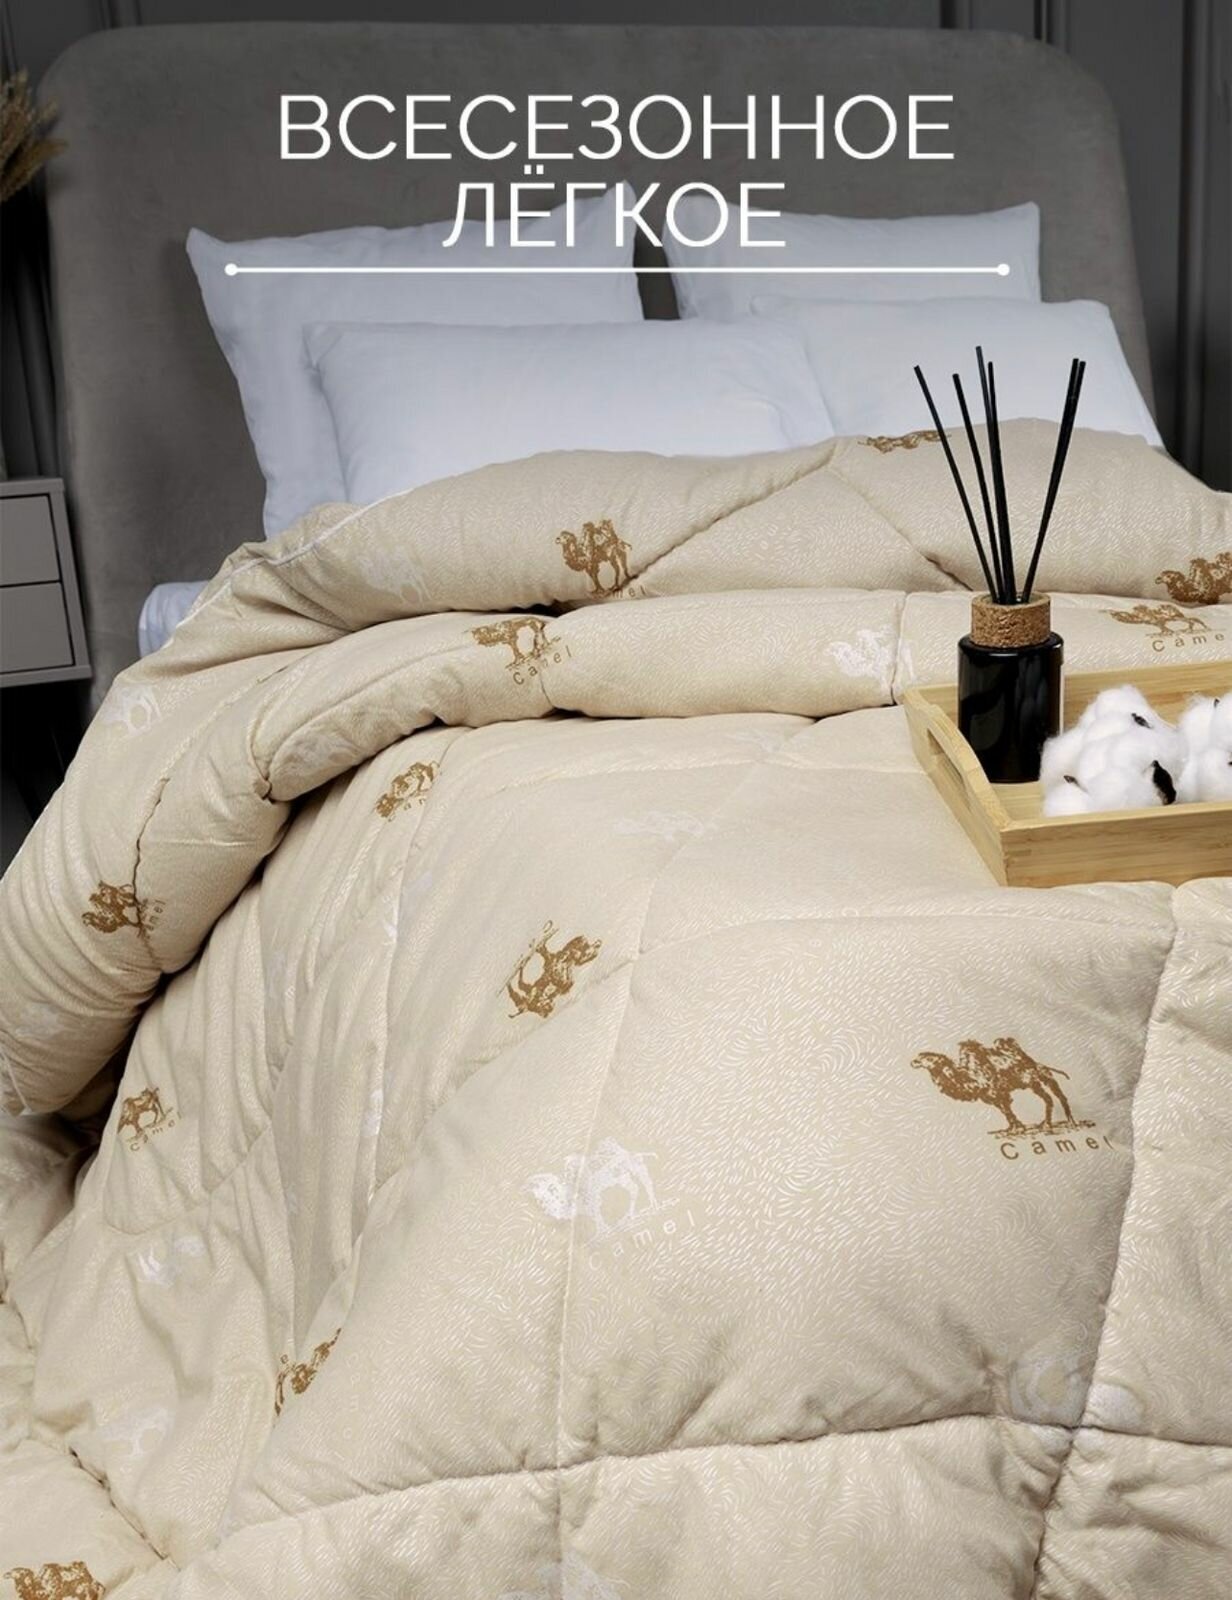 Одеяло верблюд 175х210 см, размер 2 спальный, бежевое